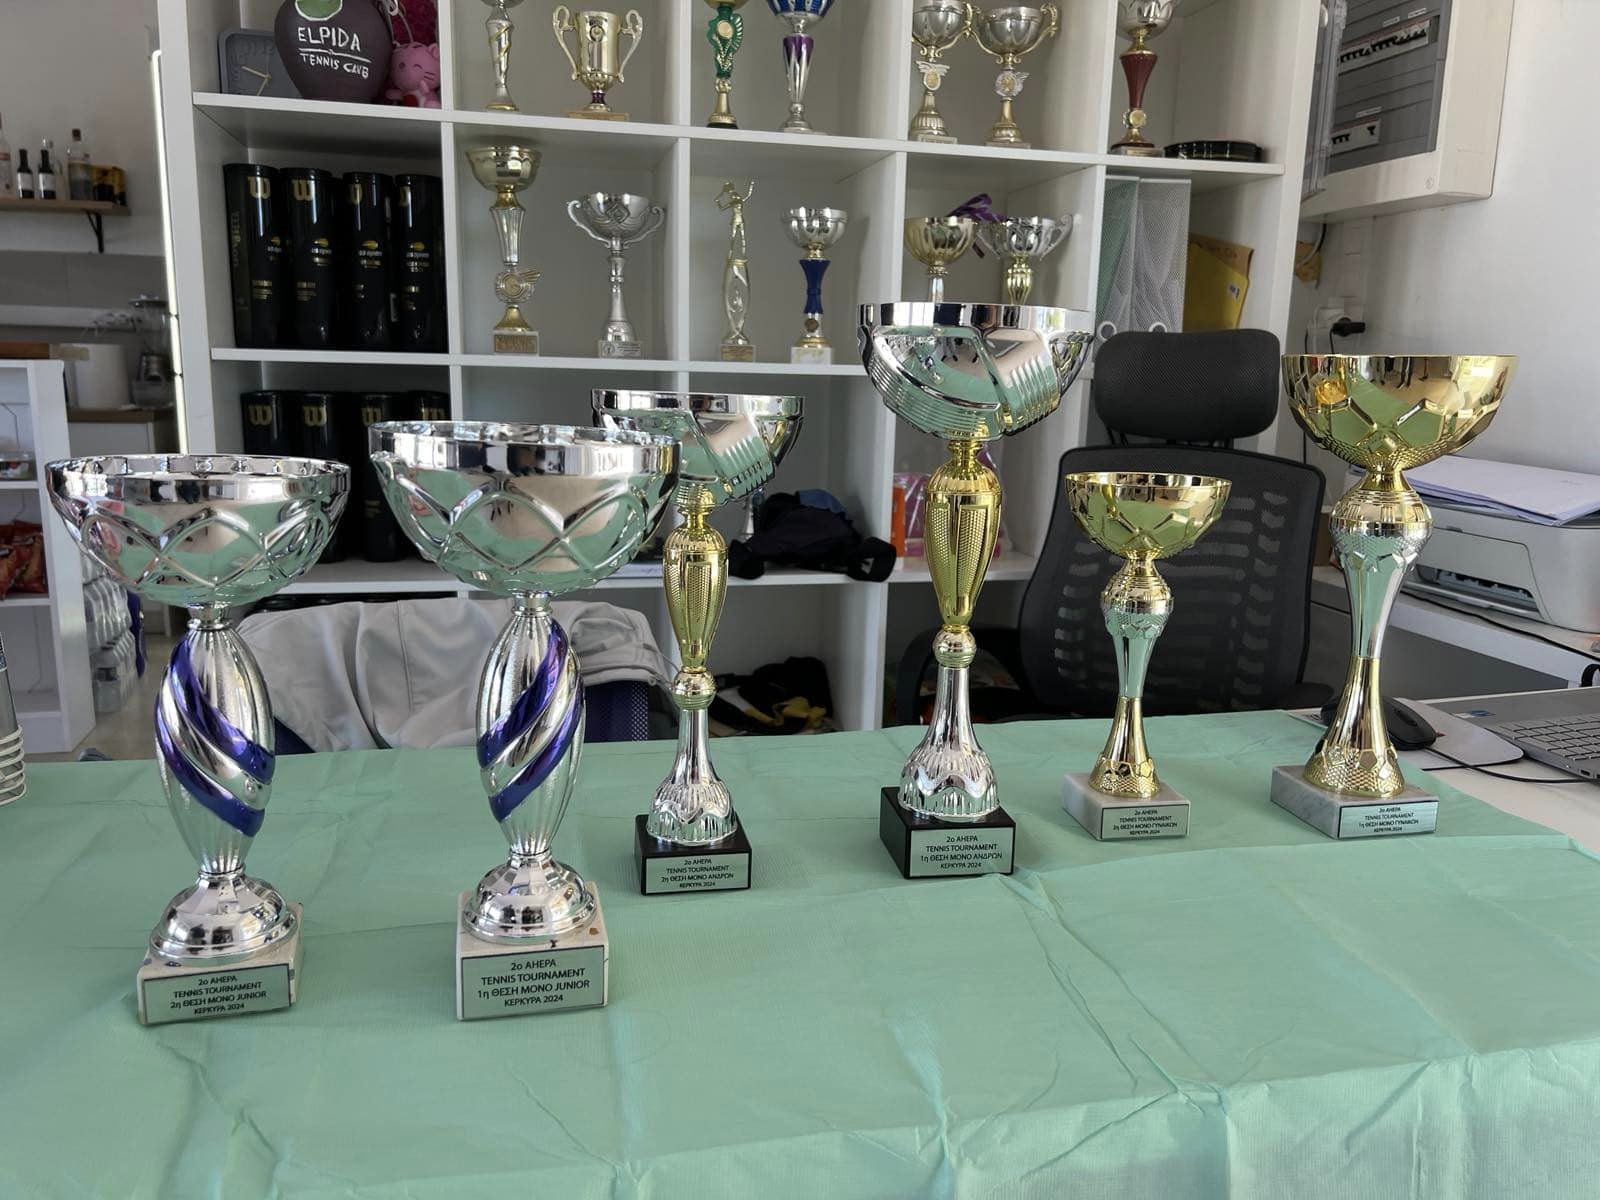 Με επιτυχία ολοκληρώθηκε το 2ου AHEPA Τουρνουά Αντισφαίρισης στην Κέρκυρα